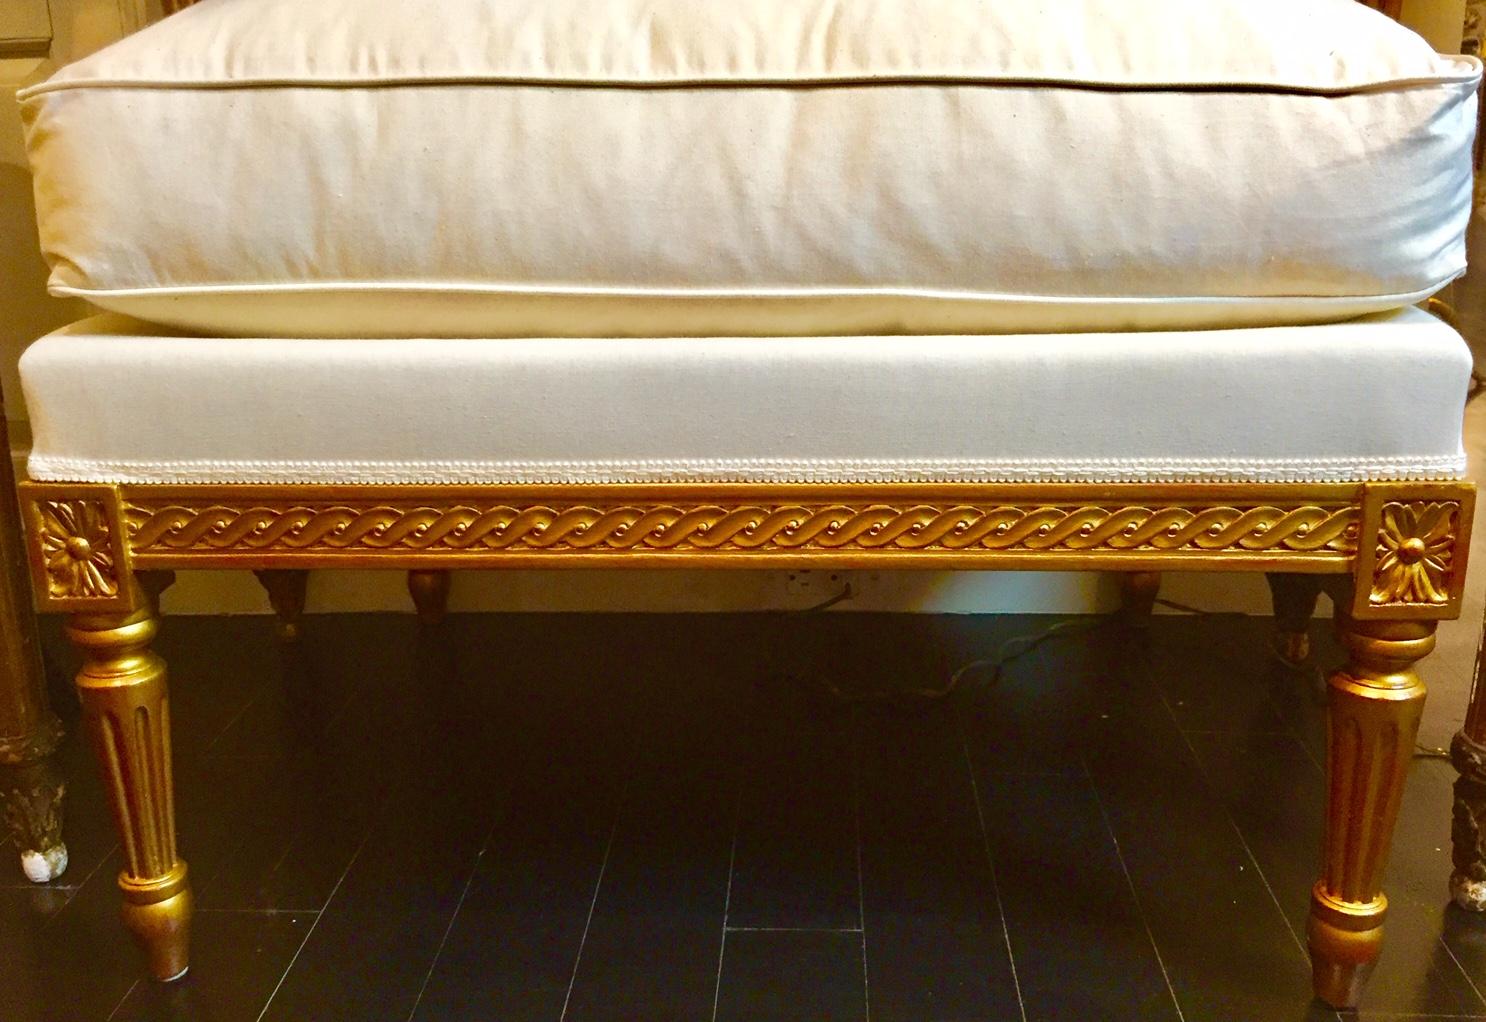 Louis XVI-Stil Fußschemel Ruhe pied, vergoldet
Großer, sehr dekorativer Hocker, der auch als zusätzliche Sitzgelegenheit oder als Ottomane anstelle eines Couchtisches verwendet werden kann. Eine großartige Ergänzung für jeden Raum.
Mehr als eine ist